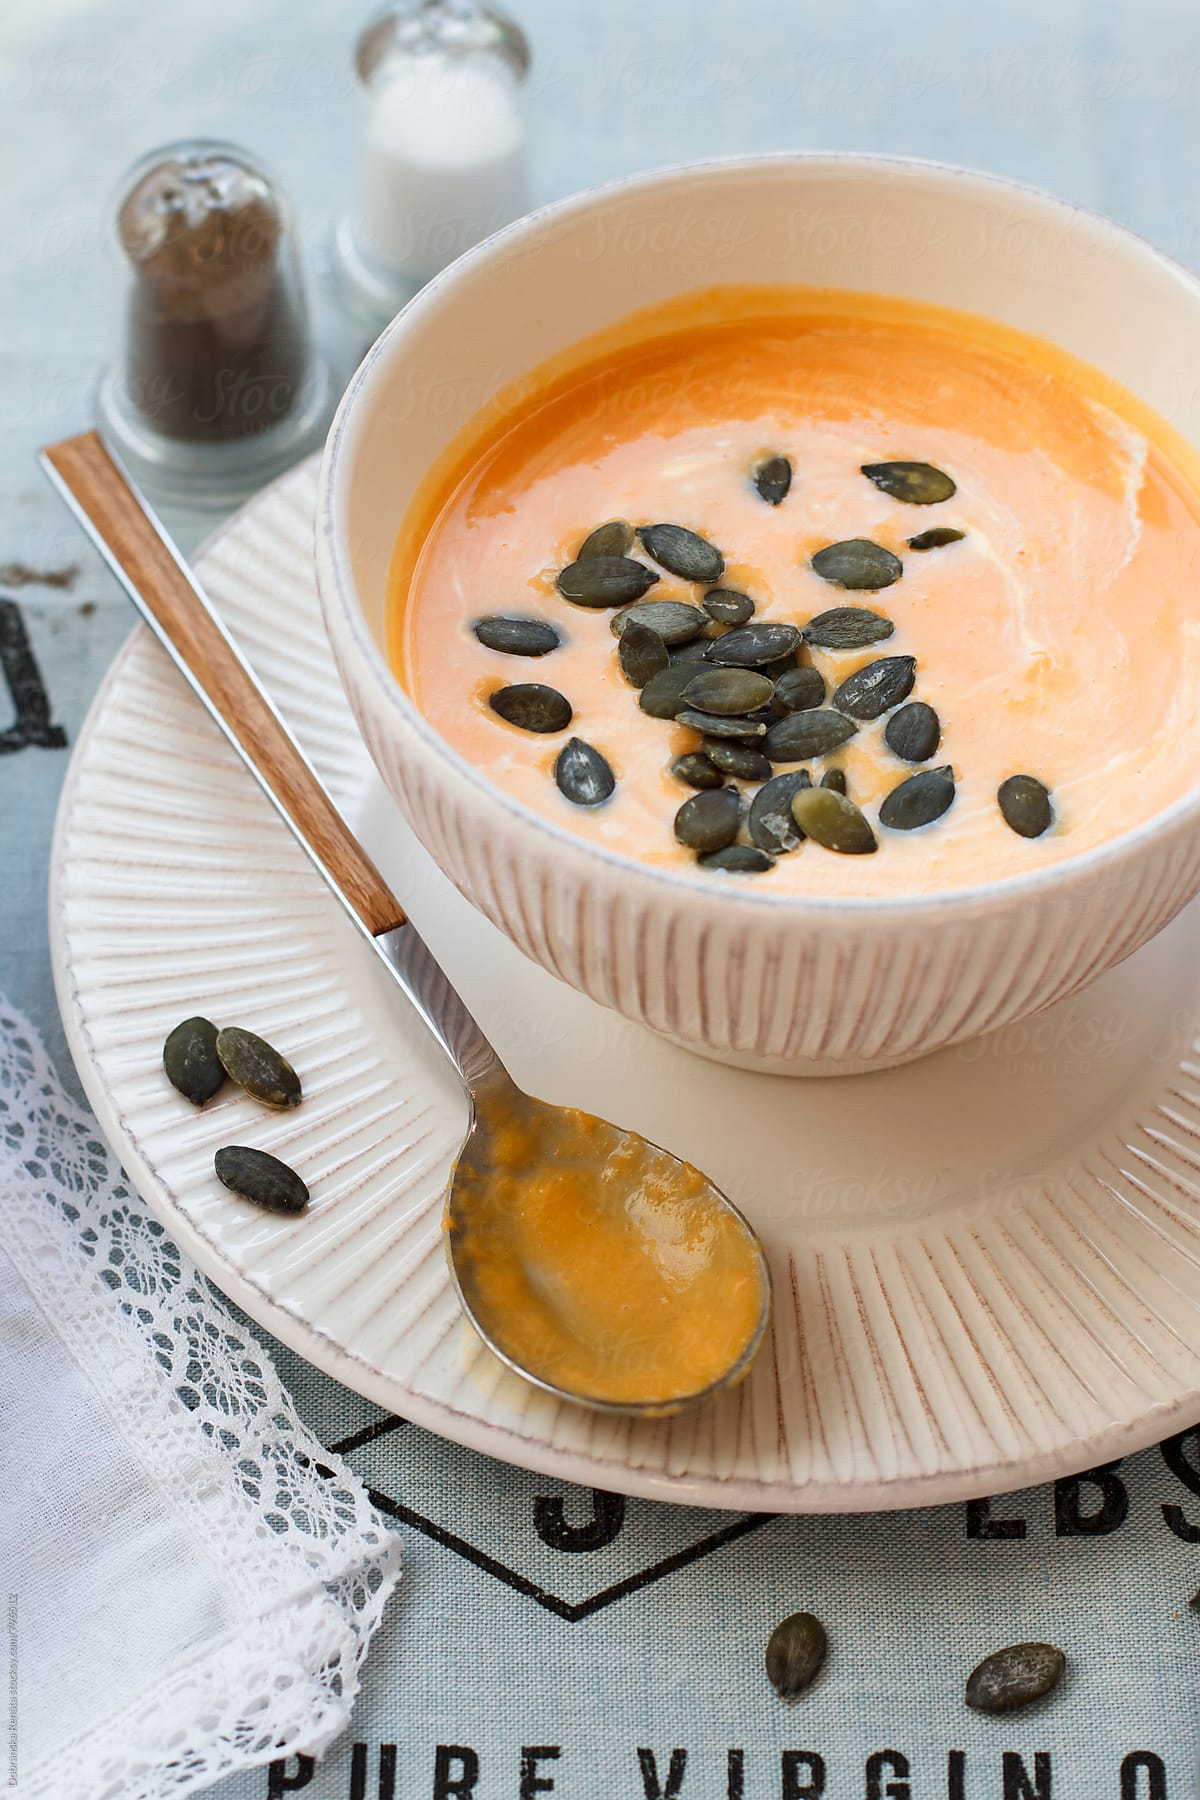 Cream of pumpkin soup with pumpkin seeds